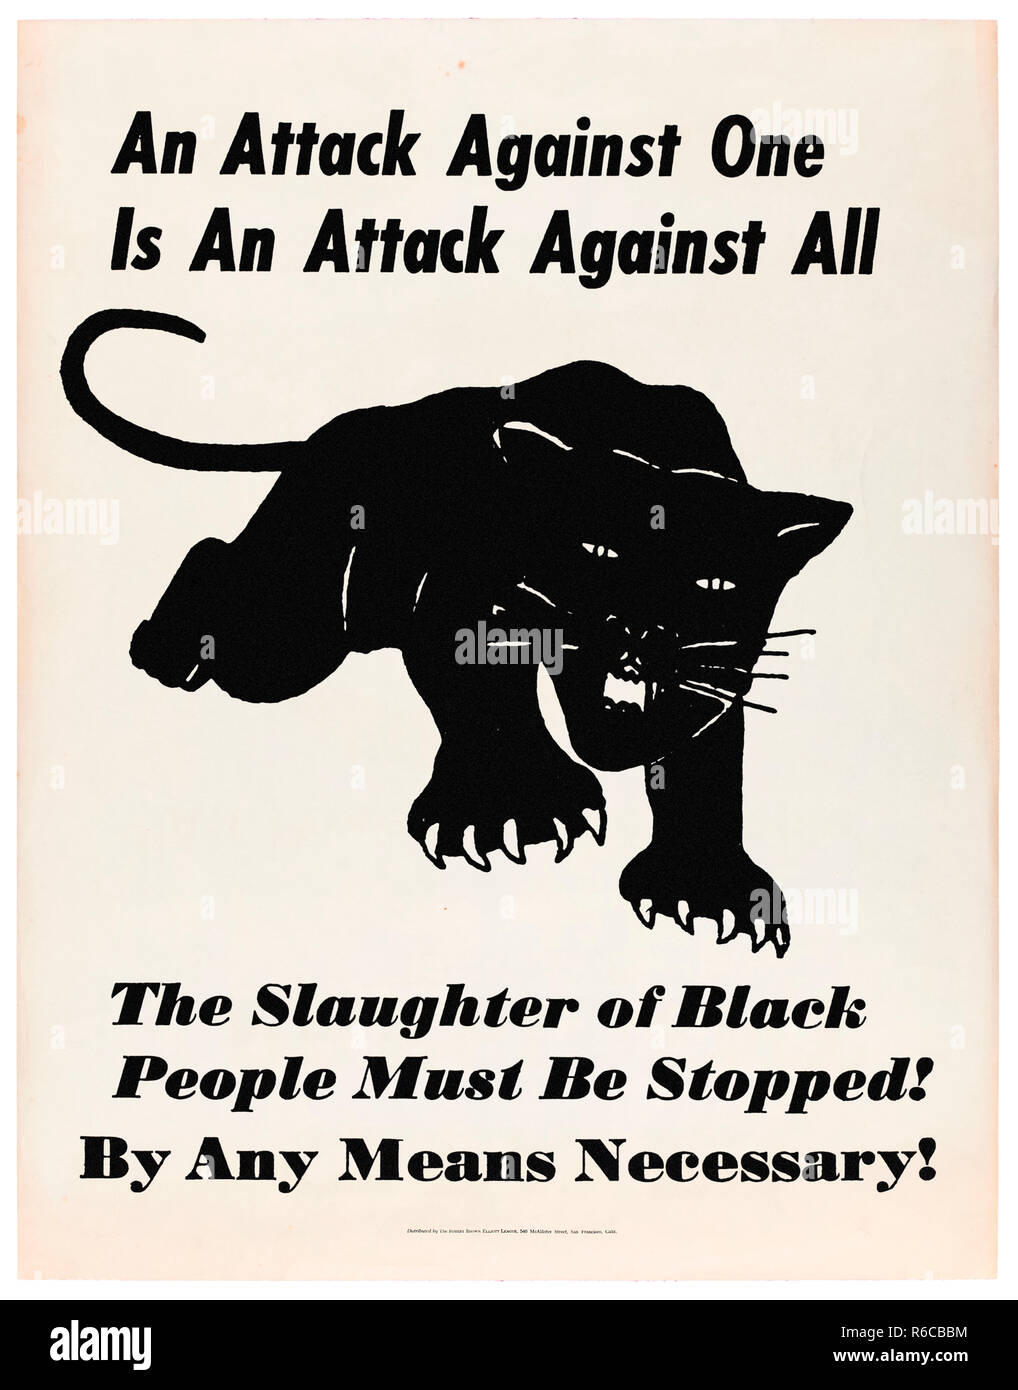 "Ein Angriff auf einen ist ein Angriff gegen alle - die Tötung von schwarzen Menschen muss gestoppt werden! Mit allen Mitteln!" 1969 Plakat für die Black Panther Party für Selbstverteidigung. Weitere Informationen finden Sie unten. Stockfoto